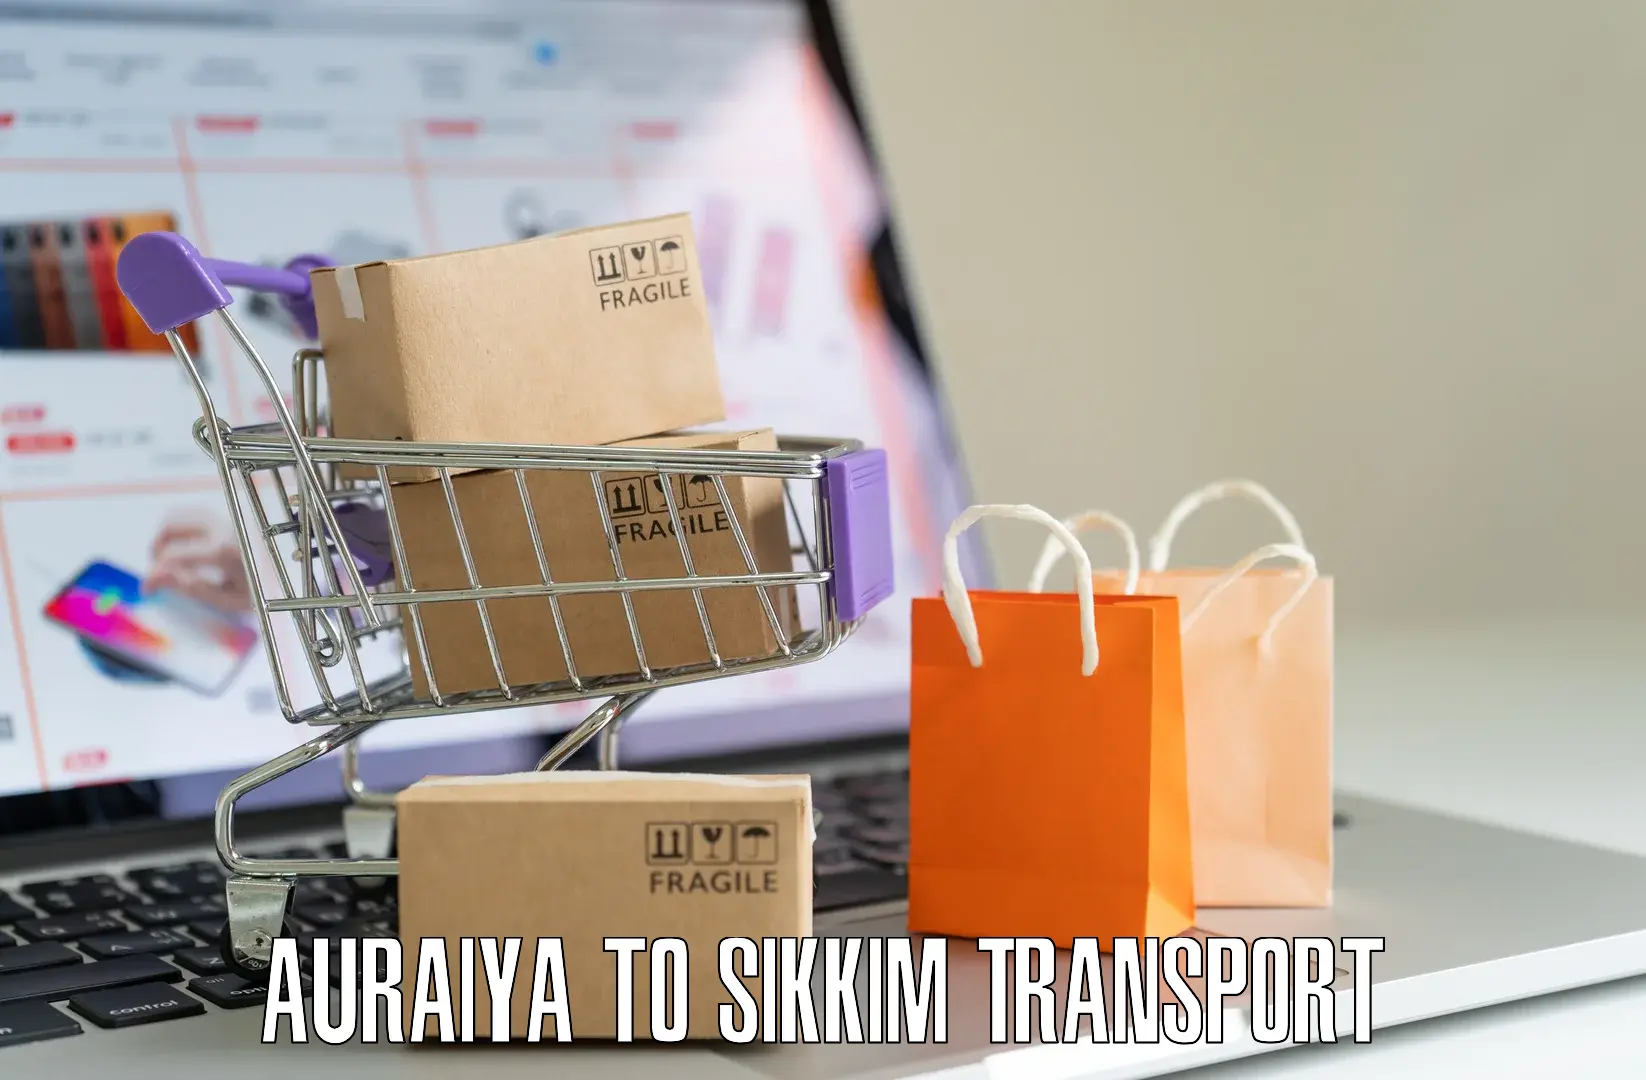 Two wheeler parcel service Auraiya to Mangan